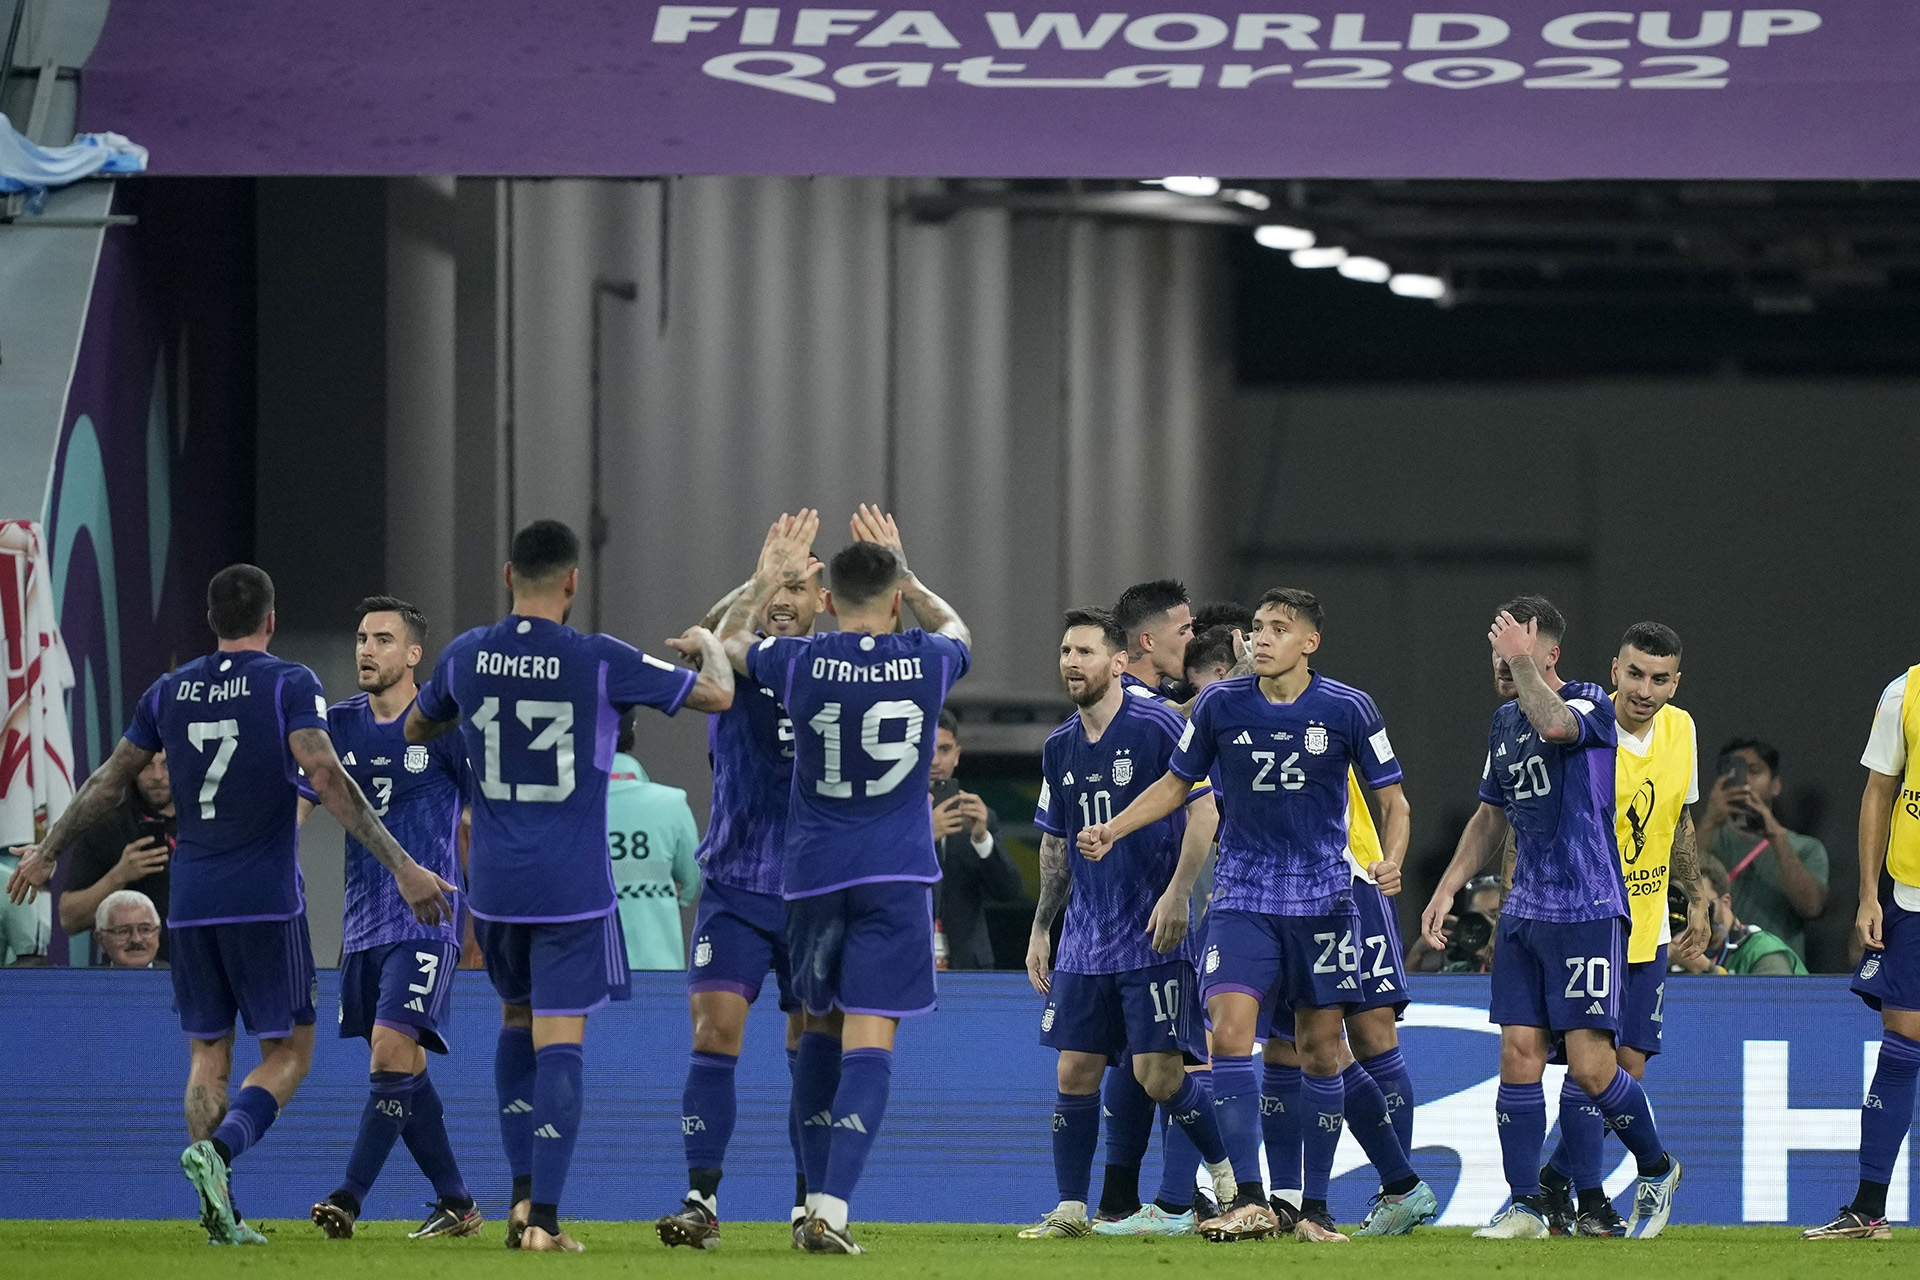 Los festejos del segundo gol argentino. Foto: AP Photo/Jorge Saenz